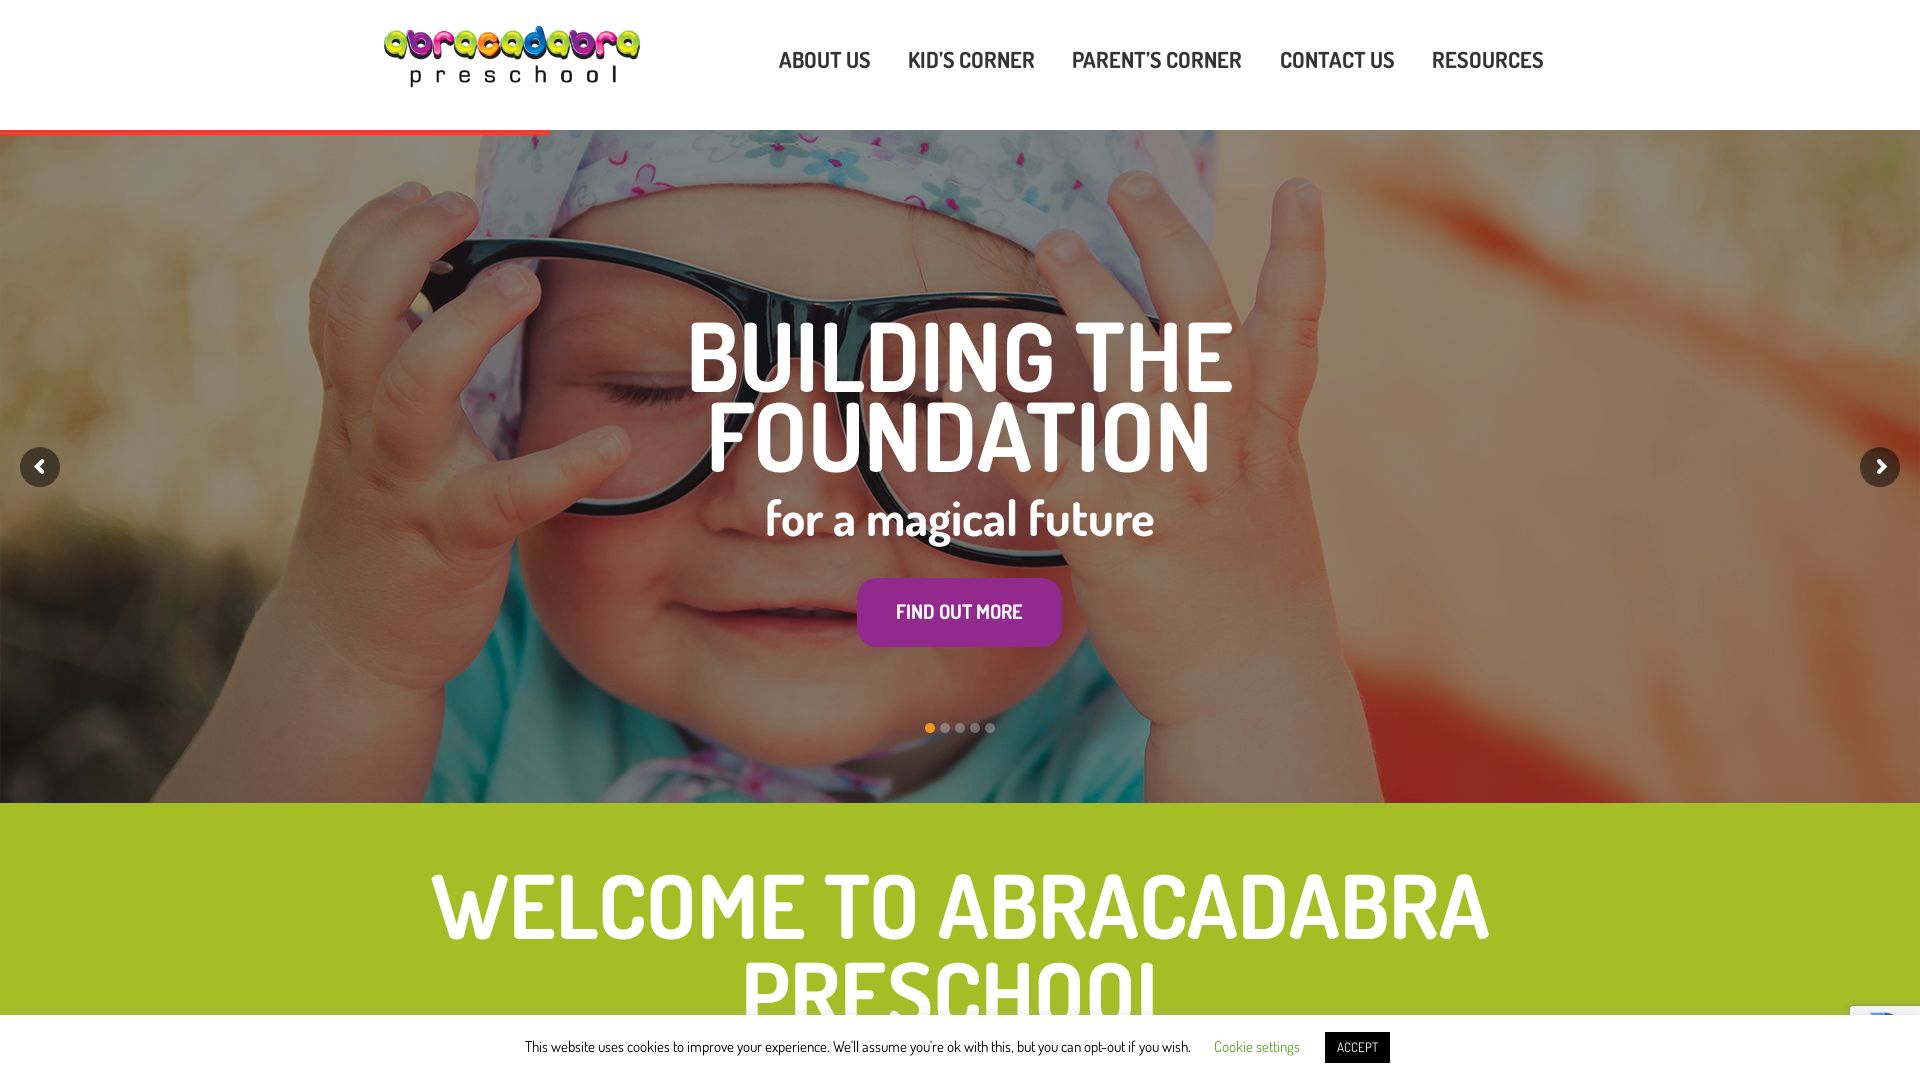 网站状态 abracadabrapreschool.co.uk 是  在线的